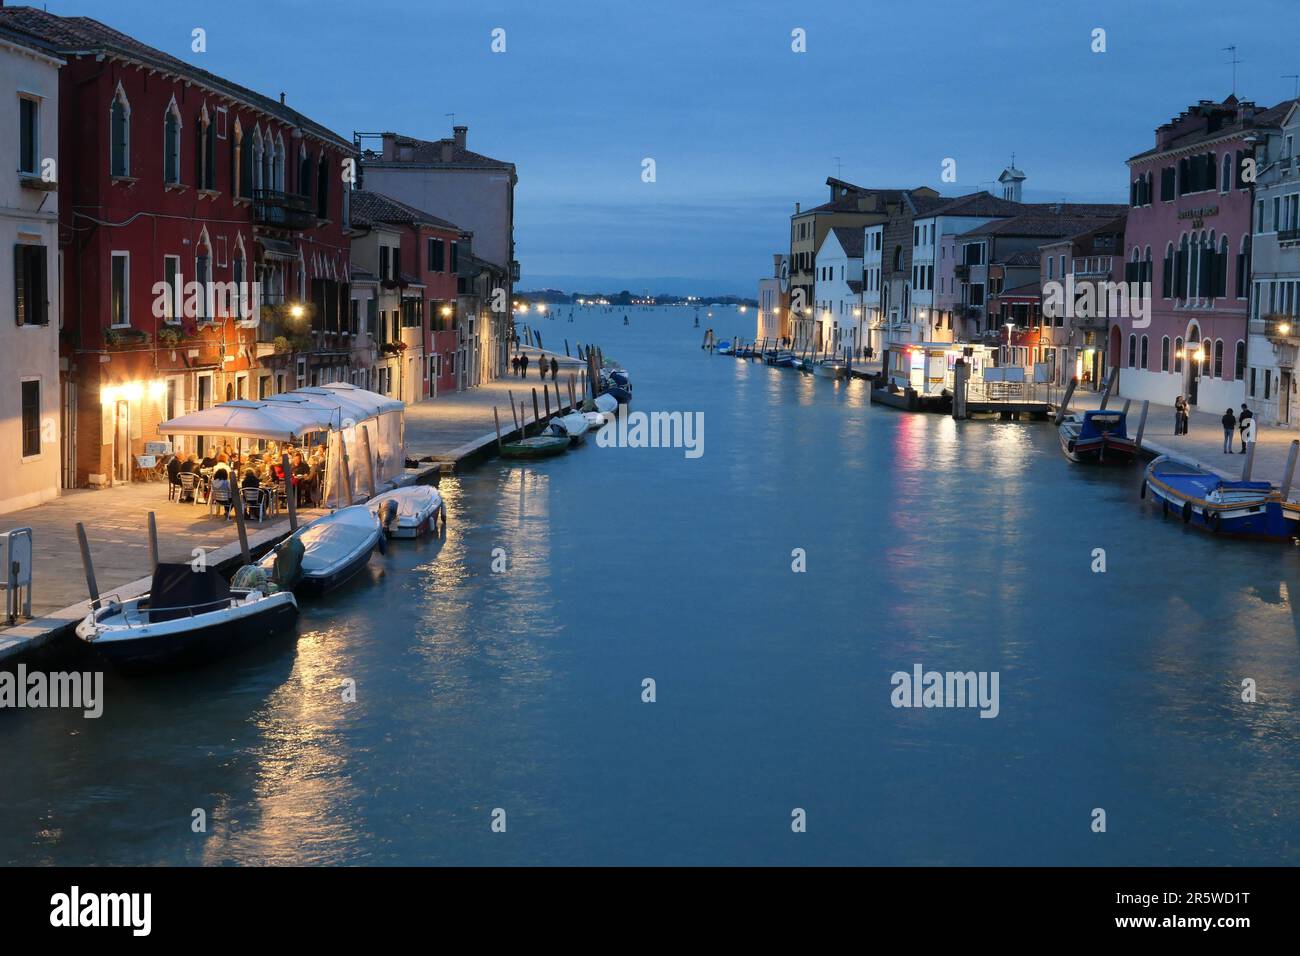 Venedig, Canale di Cannareggio // Venice, Canale di Cannareggio Stock Photo